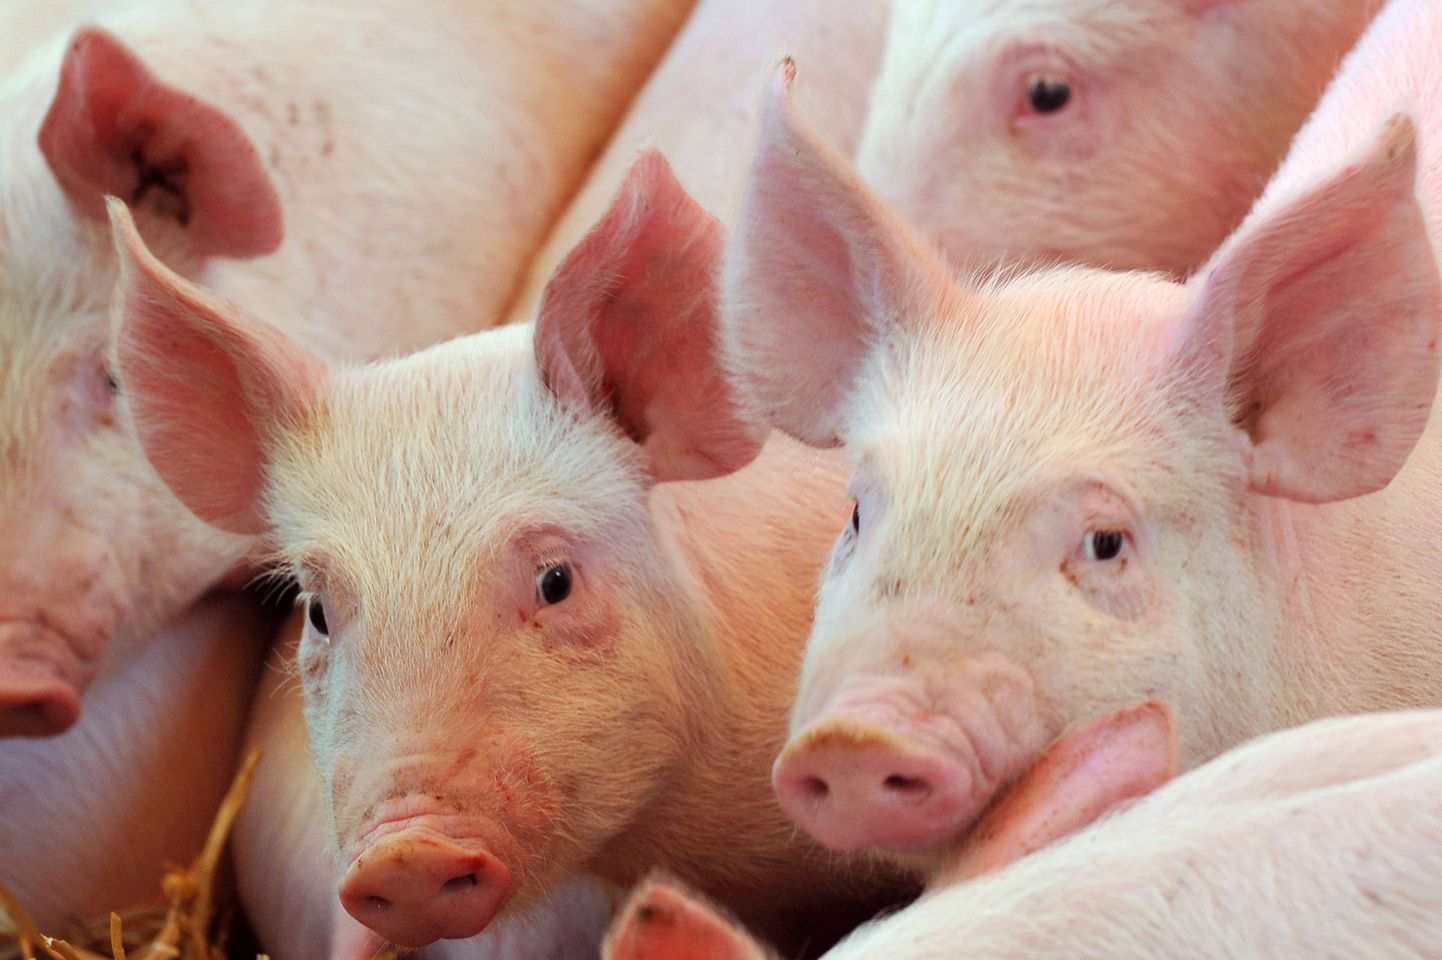 В прошлом году в связи со вспышкой АЧС Министерство сельской жизни ввело более строгие правила биобезопасности для домашних свиней.